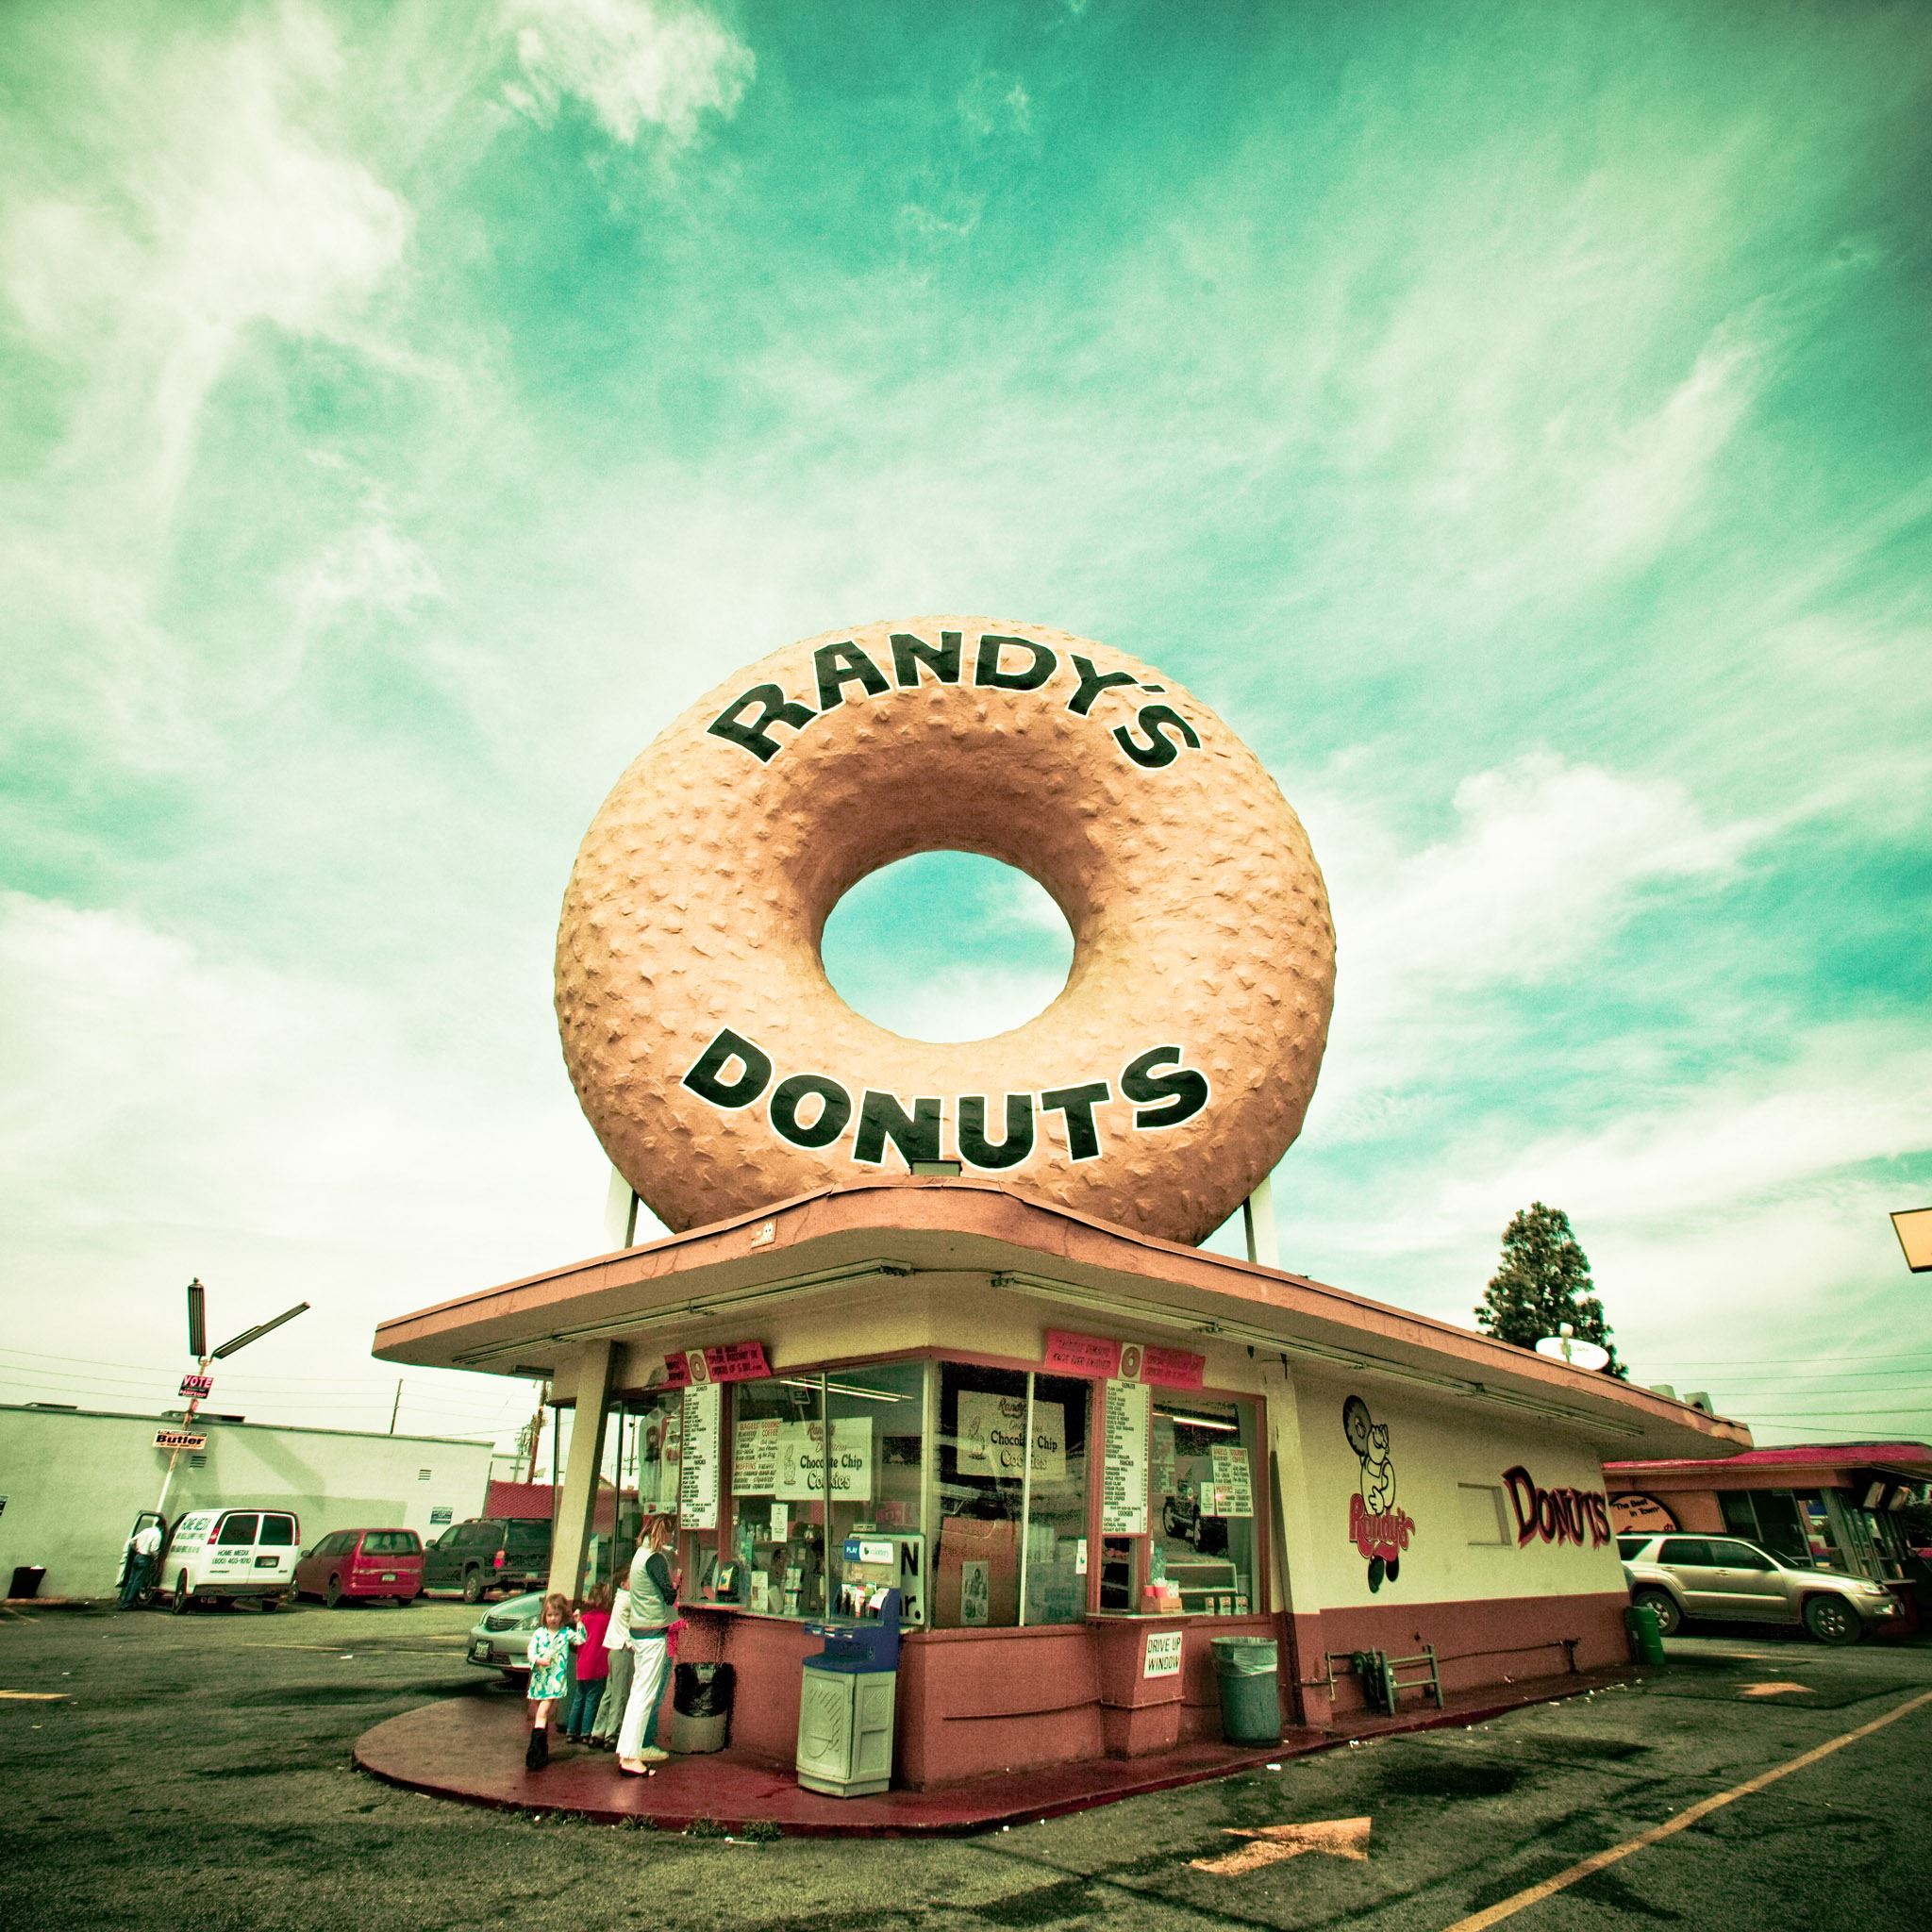 Randys Donuts iPad Air wallpaper 